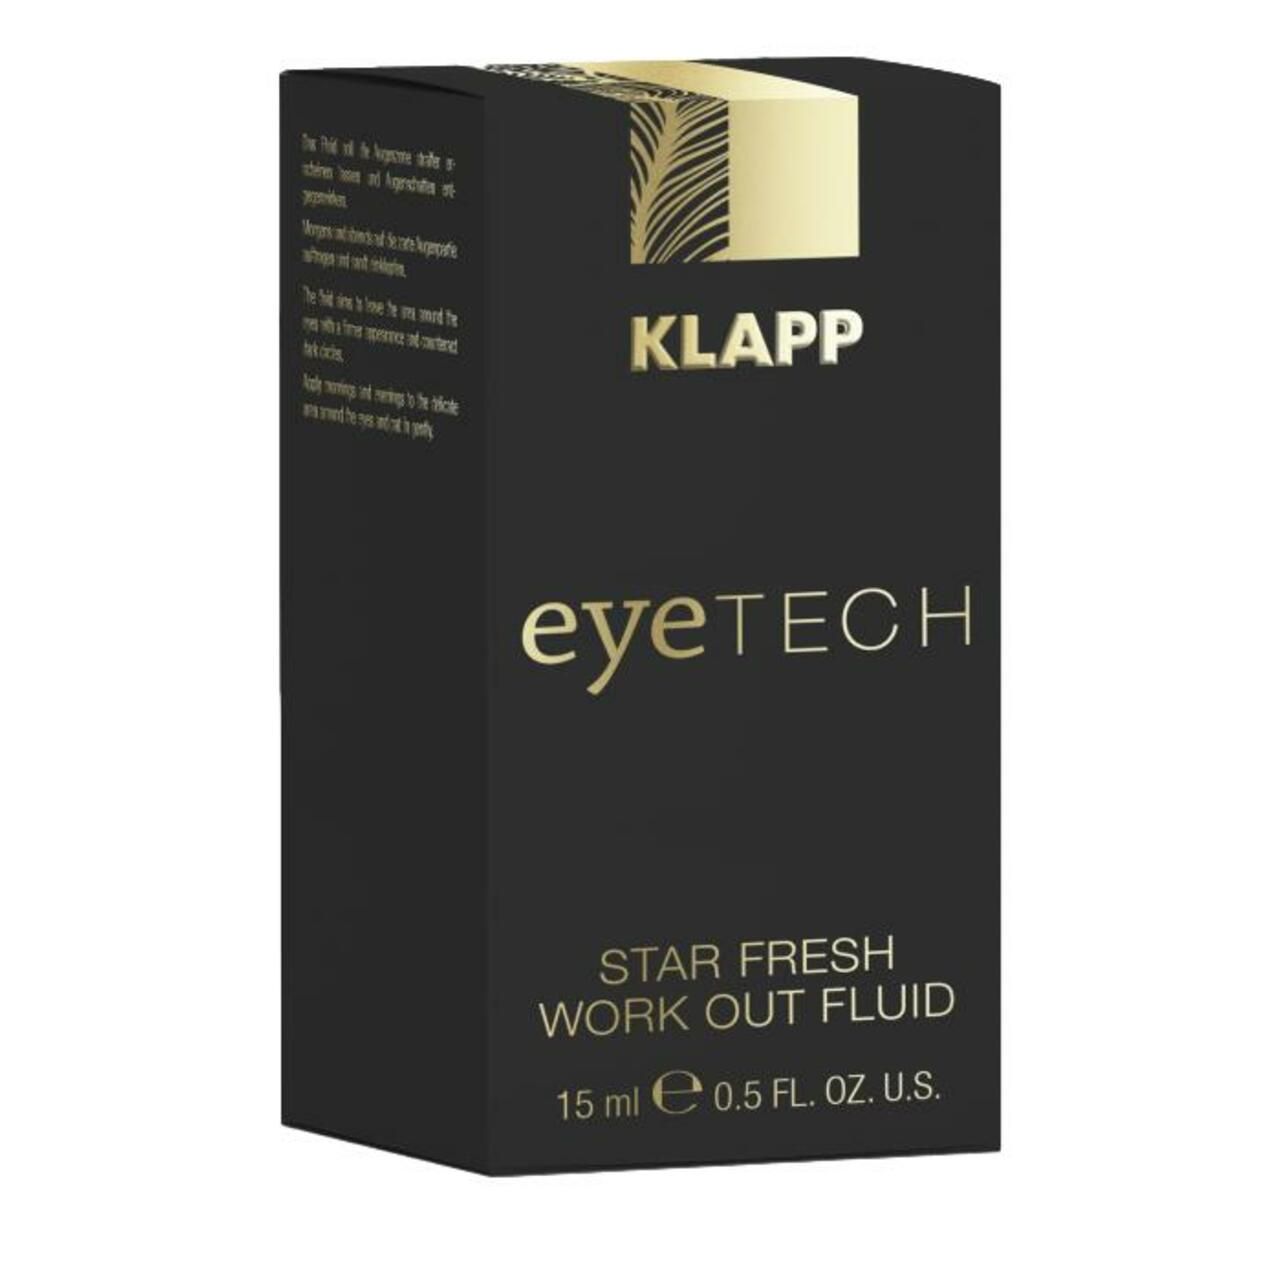 Klapp, Eyetech Star Fresh Work Out Fluid